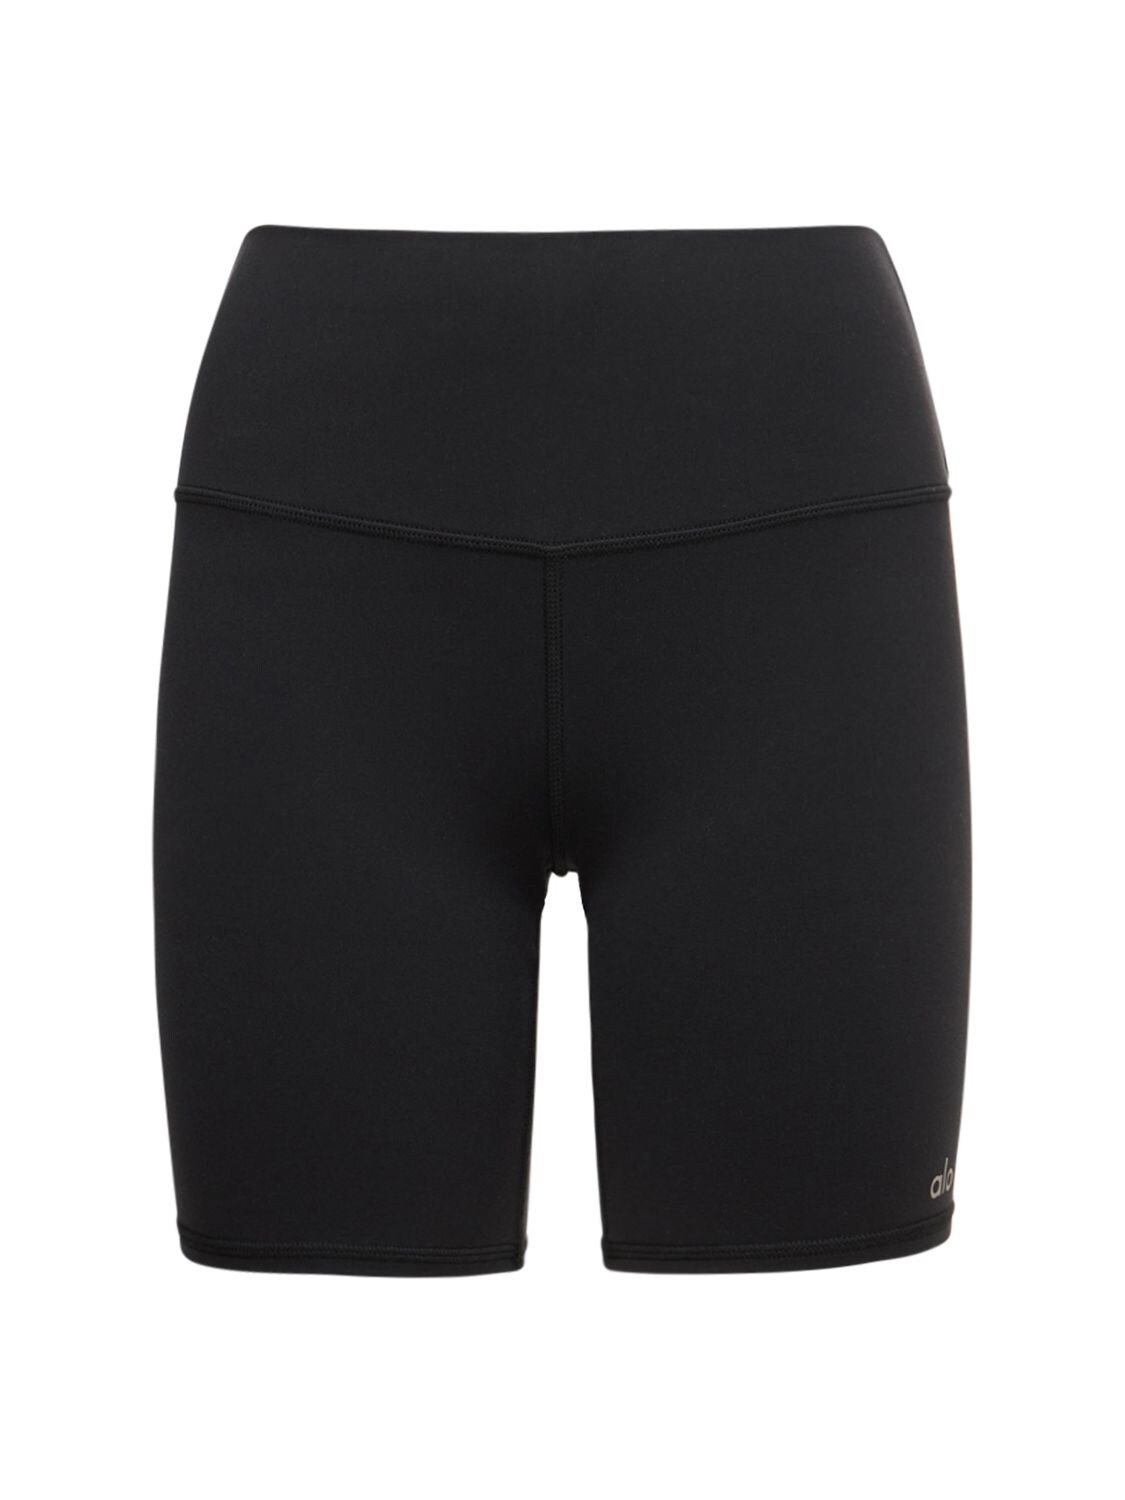 Alo Yoga High Waist Biker Shorts In Black